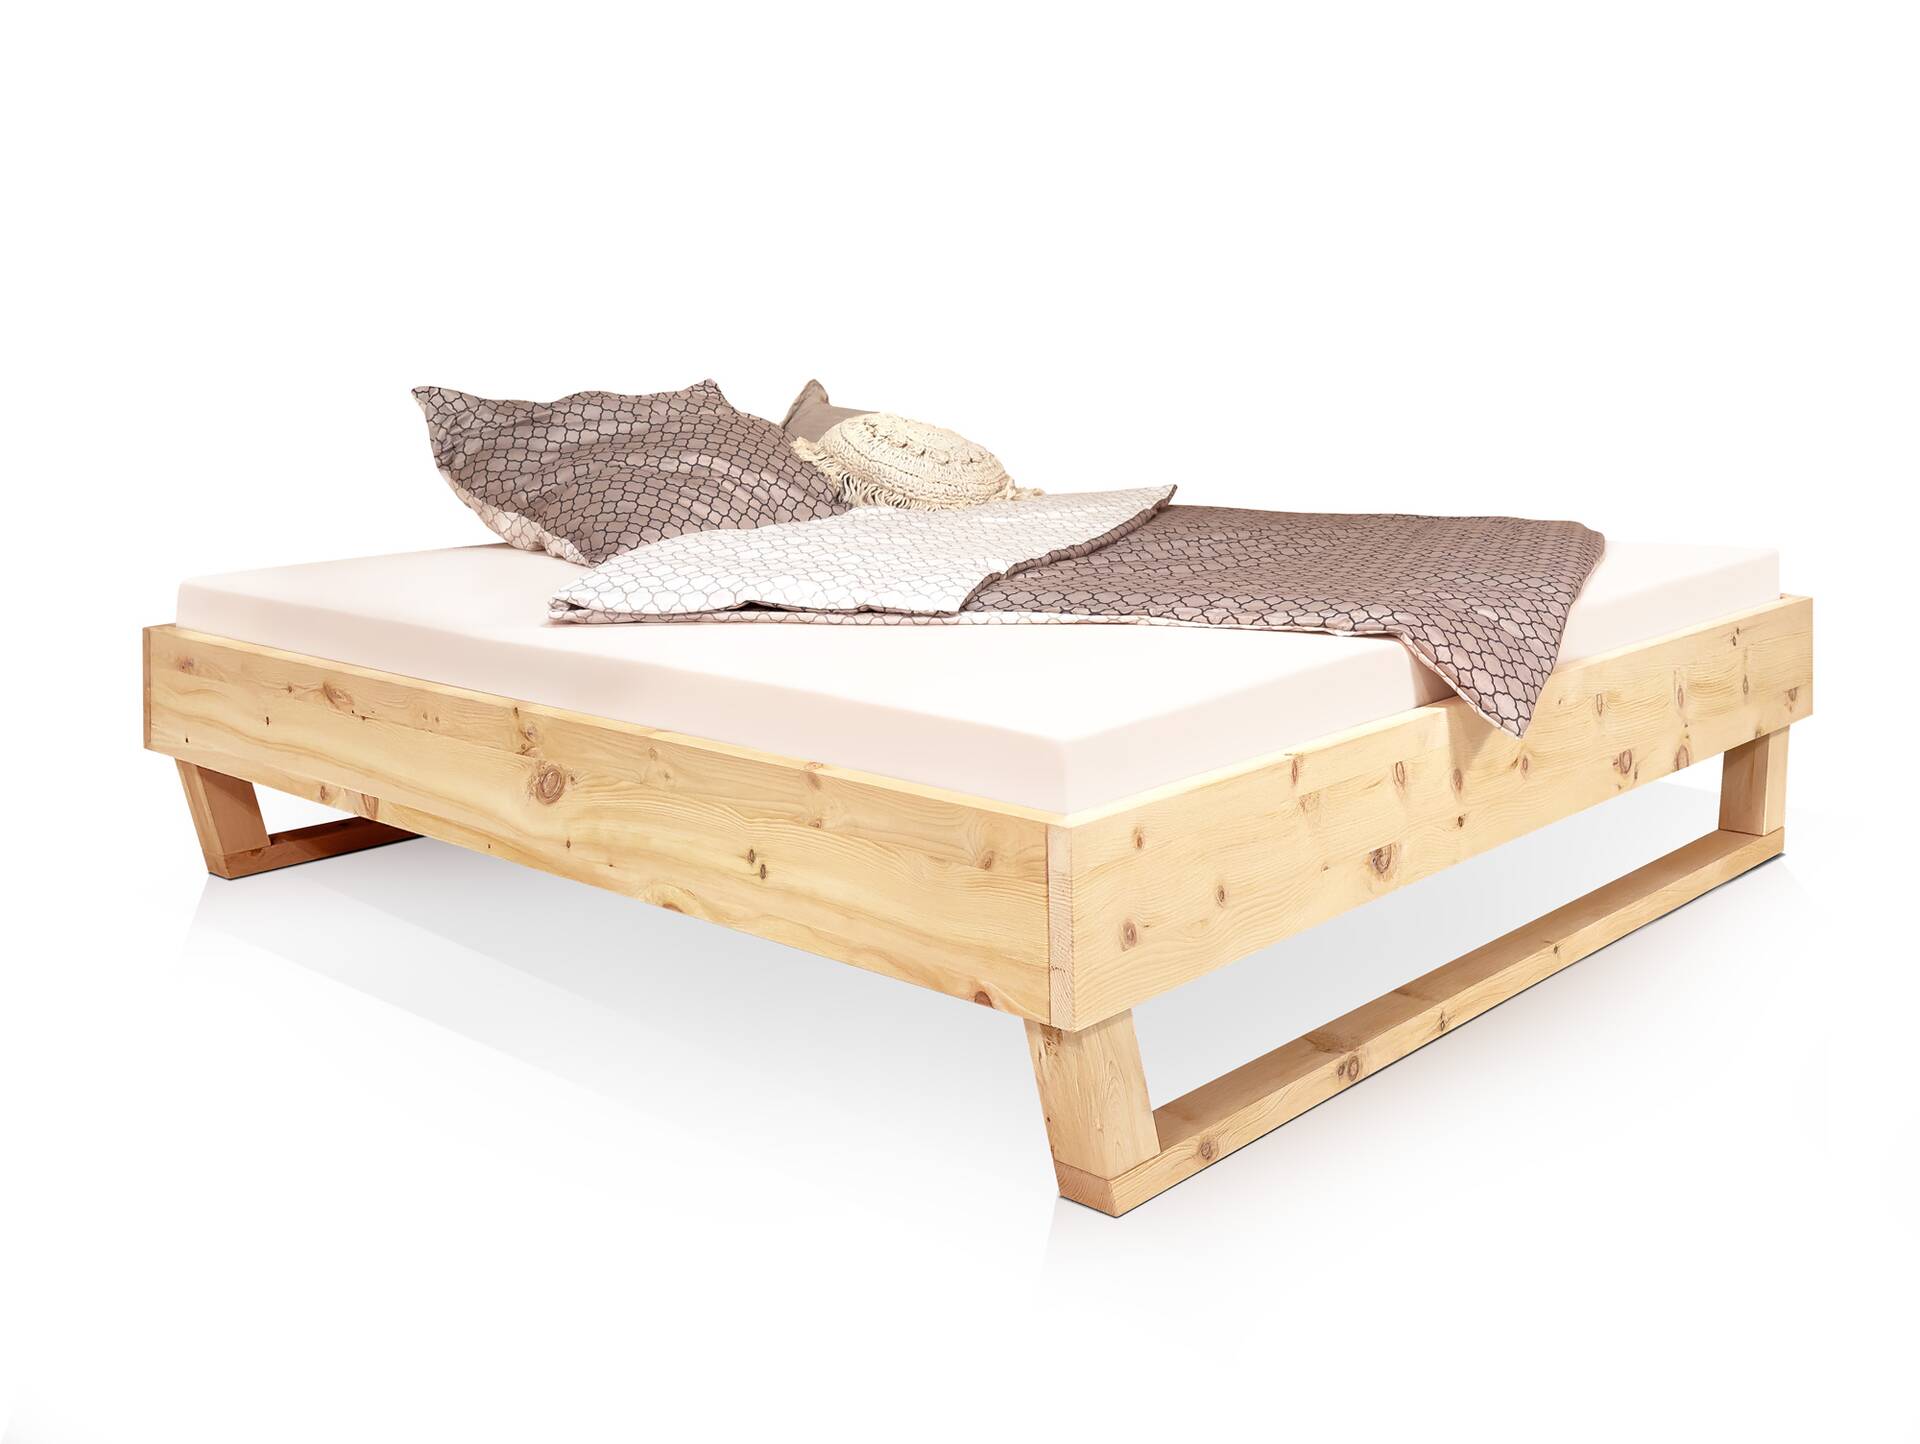 ZABINO Holz-Kufenbett aus Zirbe, Material Massivholz, mit/ohne Kopfteil 160 x 220 cm | Zirbe geölt | ohne Kopfteil